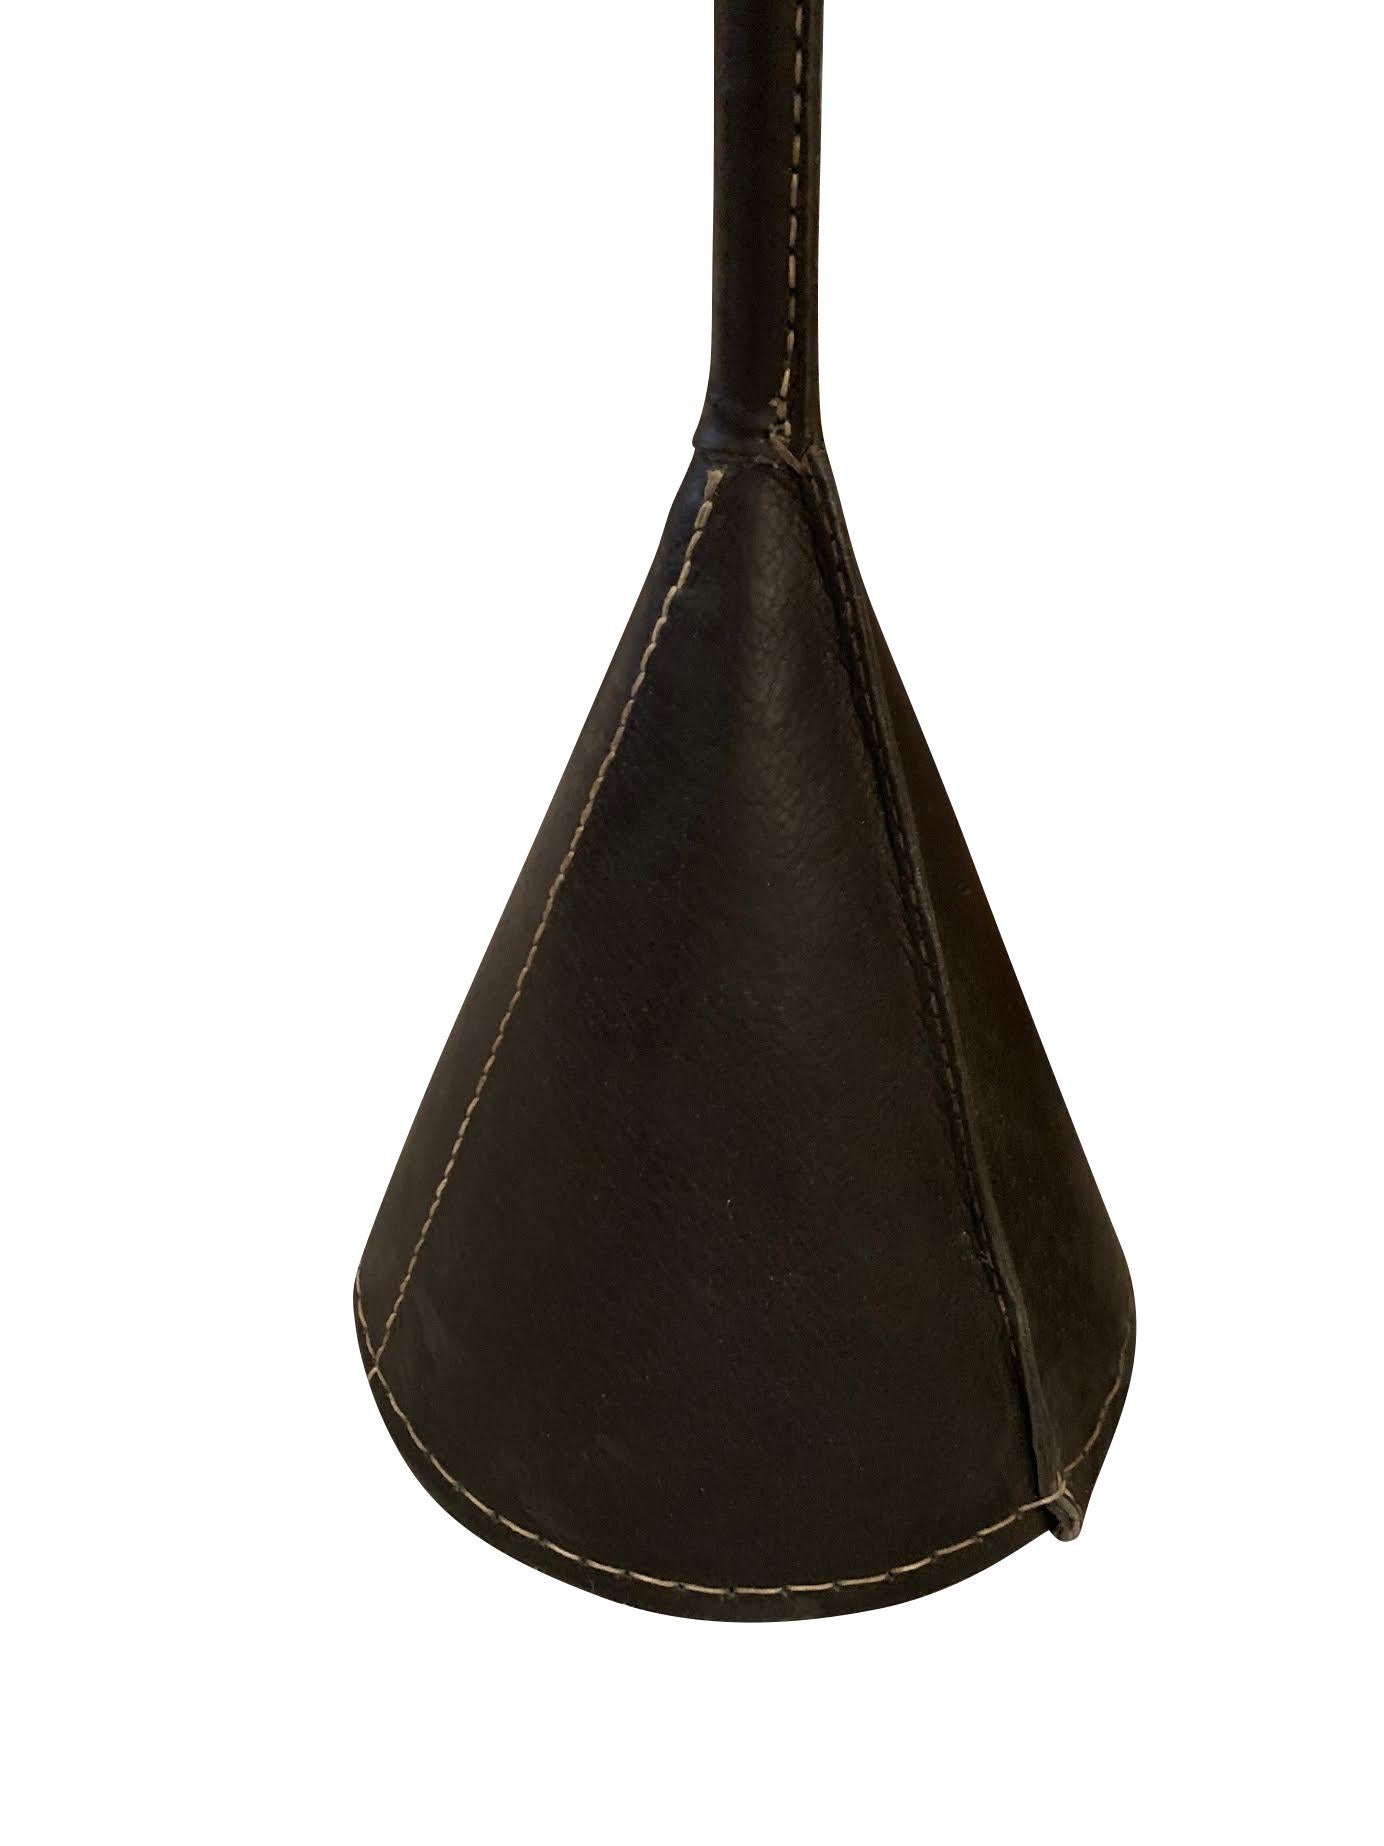 Lampadaire espagnol du milieu du siècle en cuir noir conçu par Valenti.
L'abat-jour, le poteau et la base du sol sont tous recouverts de cuir noir.
L'abat-jour s'adapte à la lumière directe.
Également disponible en brun (L1120) et en vin